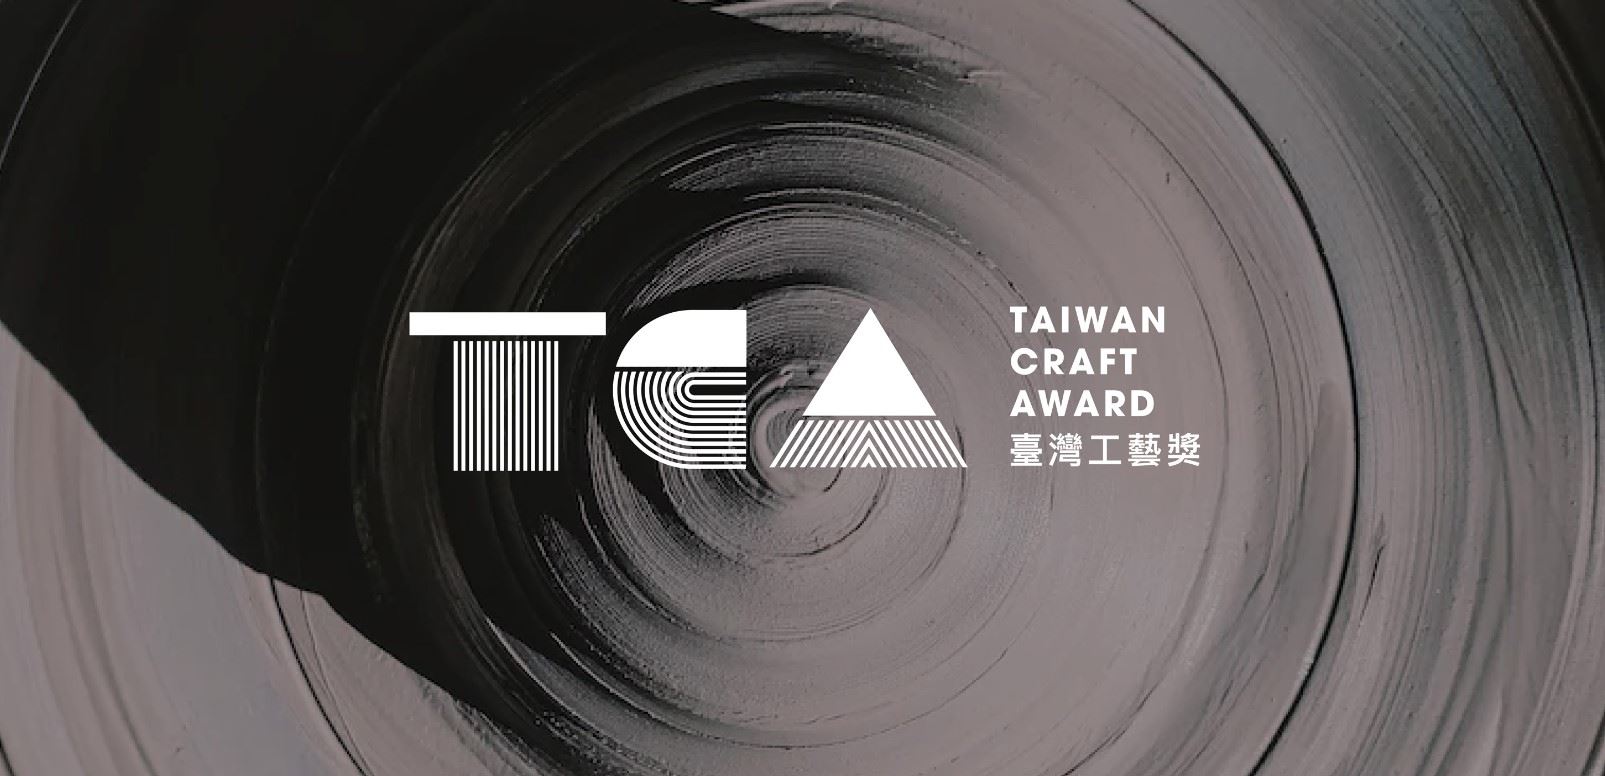 Taiwan Craft Award